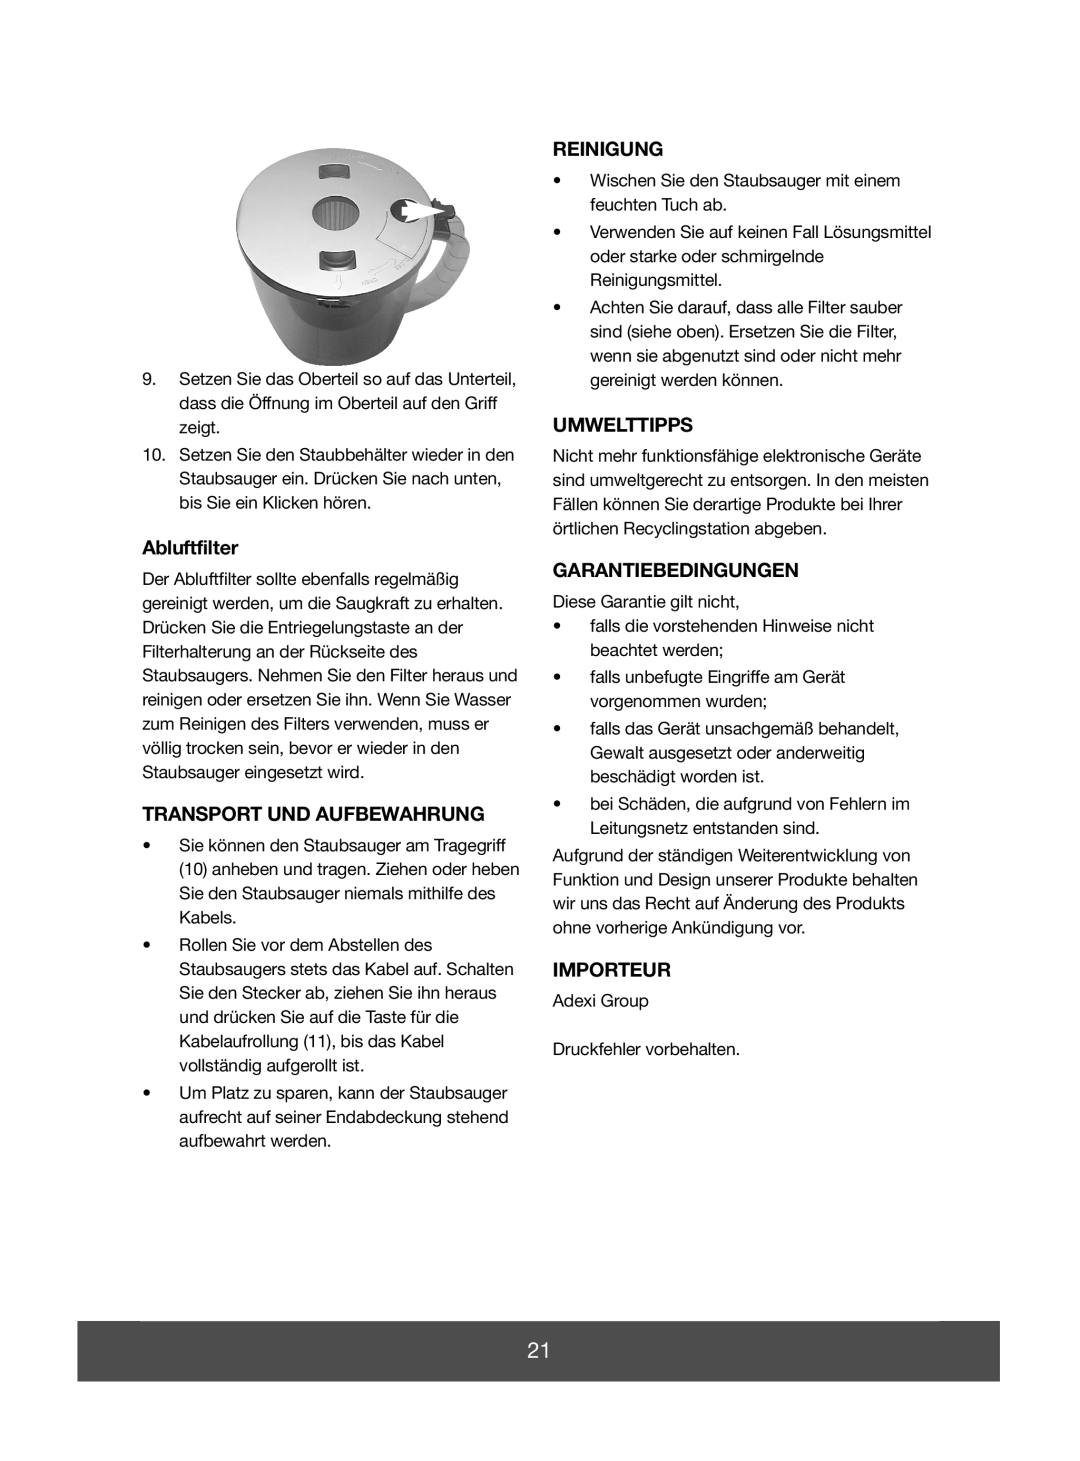 Melissa 740-096 manual Abluftfilter, Transport Und Aufbewahrung, Reinigung, Umwelttipps, Garantiebedingungen, Importeur 